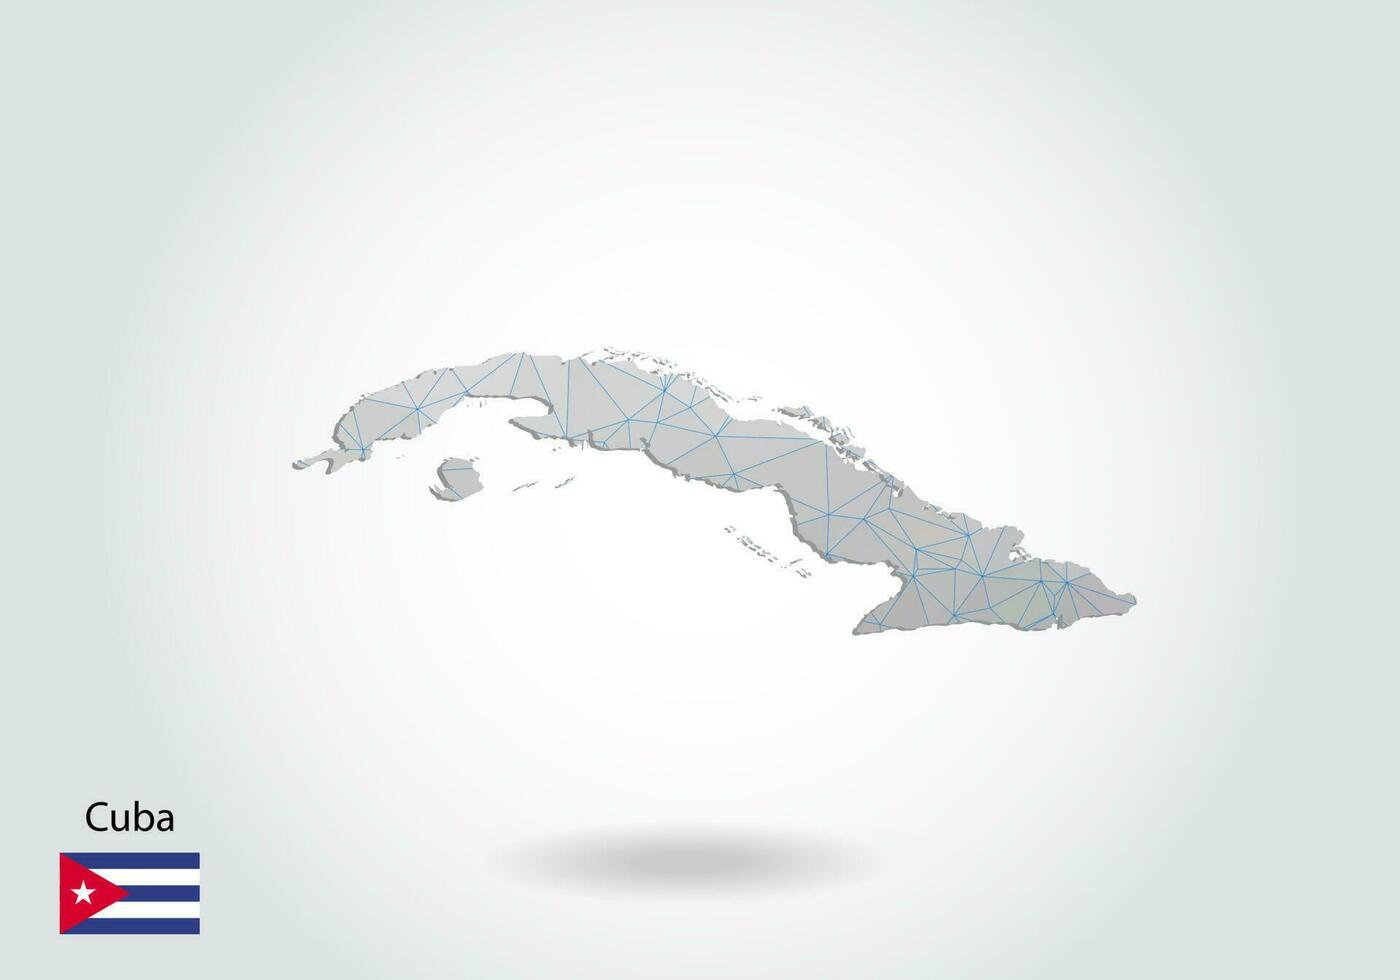 vektor karta över Kuba med trendiga trianglar design i polygonal stil på mörk bakgrund, kartform i modern 3d papper cut art stil. skiktad pappersutskärningsdesign.